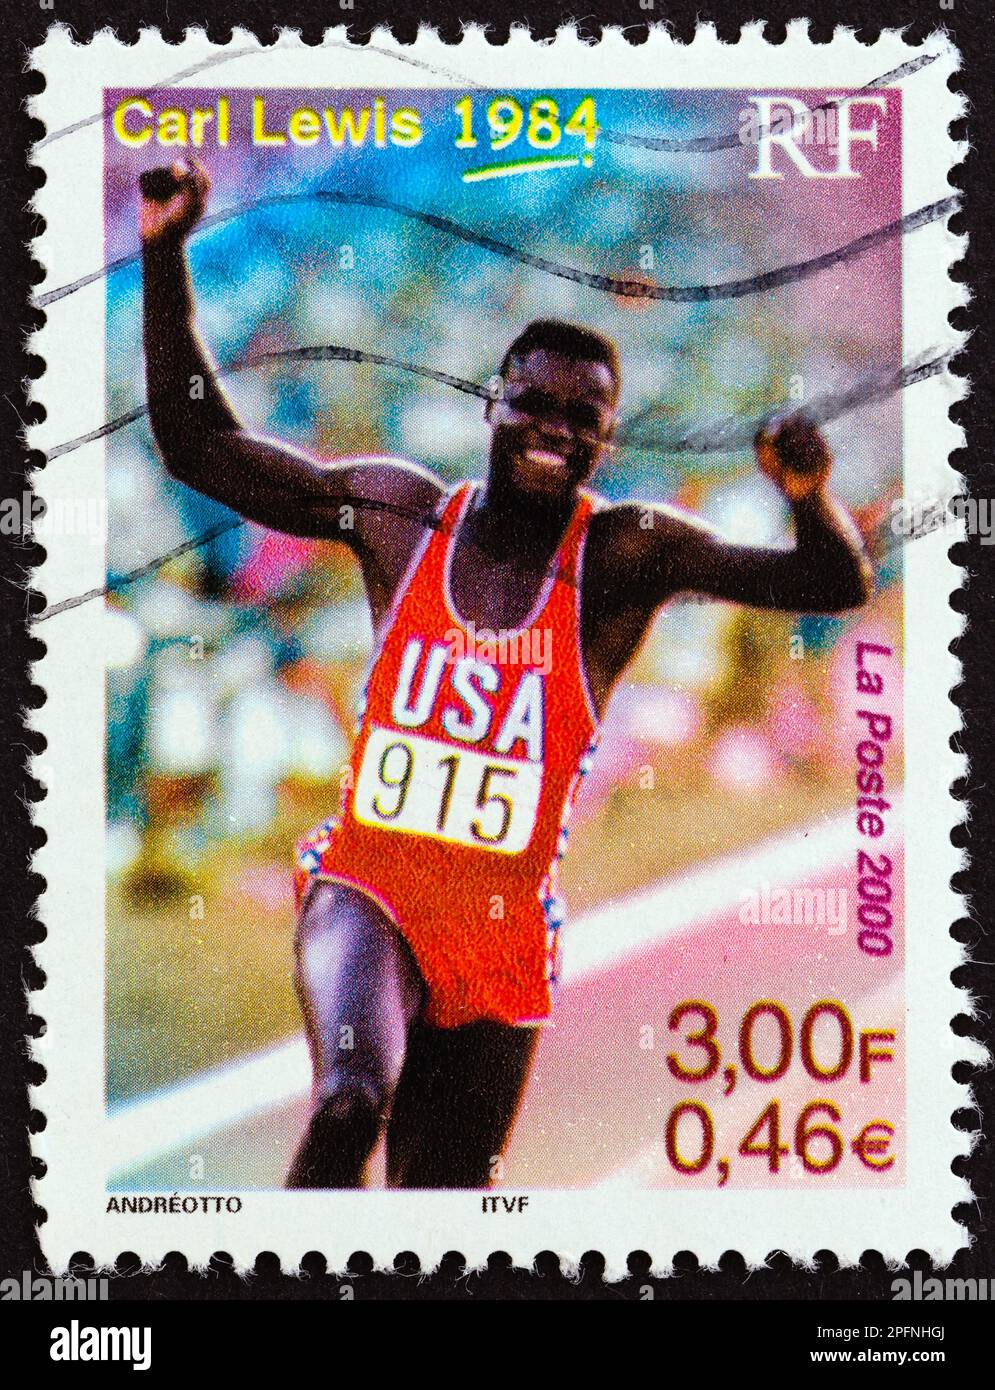 FRANCE - VERS 2000 : un timbre imprimé en France montre Carl Lewis (médaillé d'or olympique 100m, 200m, 100m relais et saut long, 1984), vers 2000. Banque D'Images